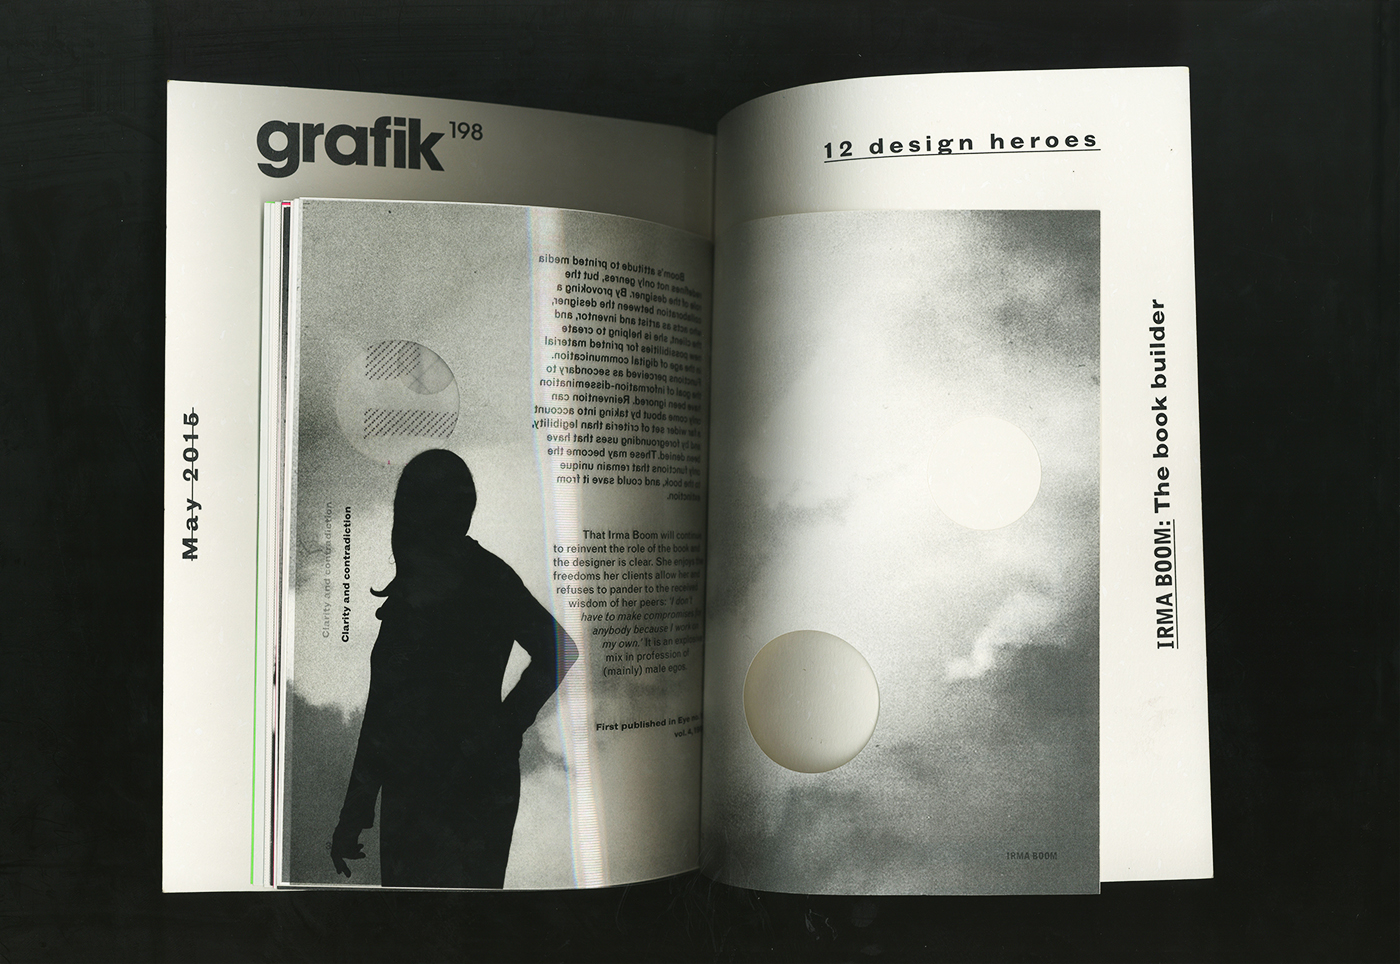 irma boom grafik Booklet publication designer editorial graphic print magazine supplement